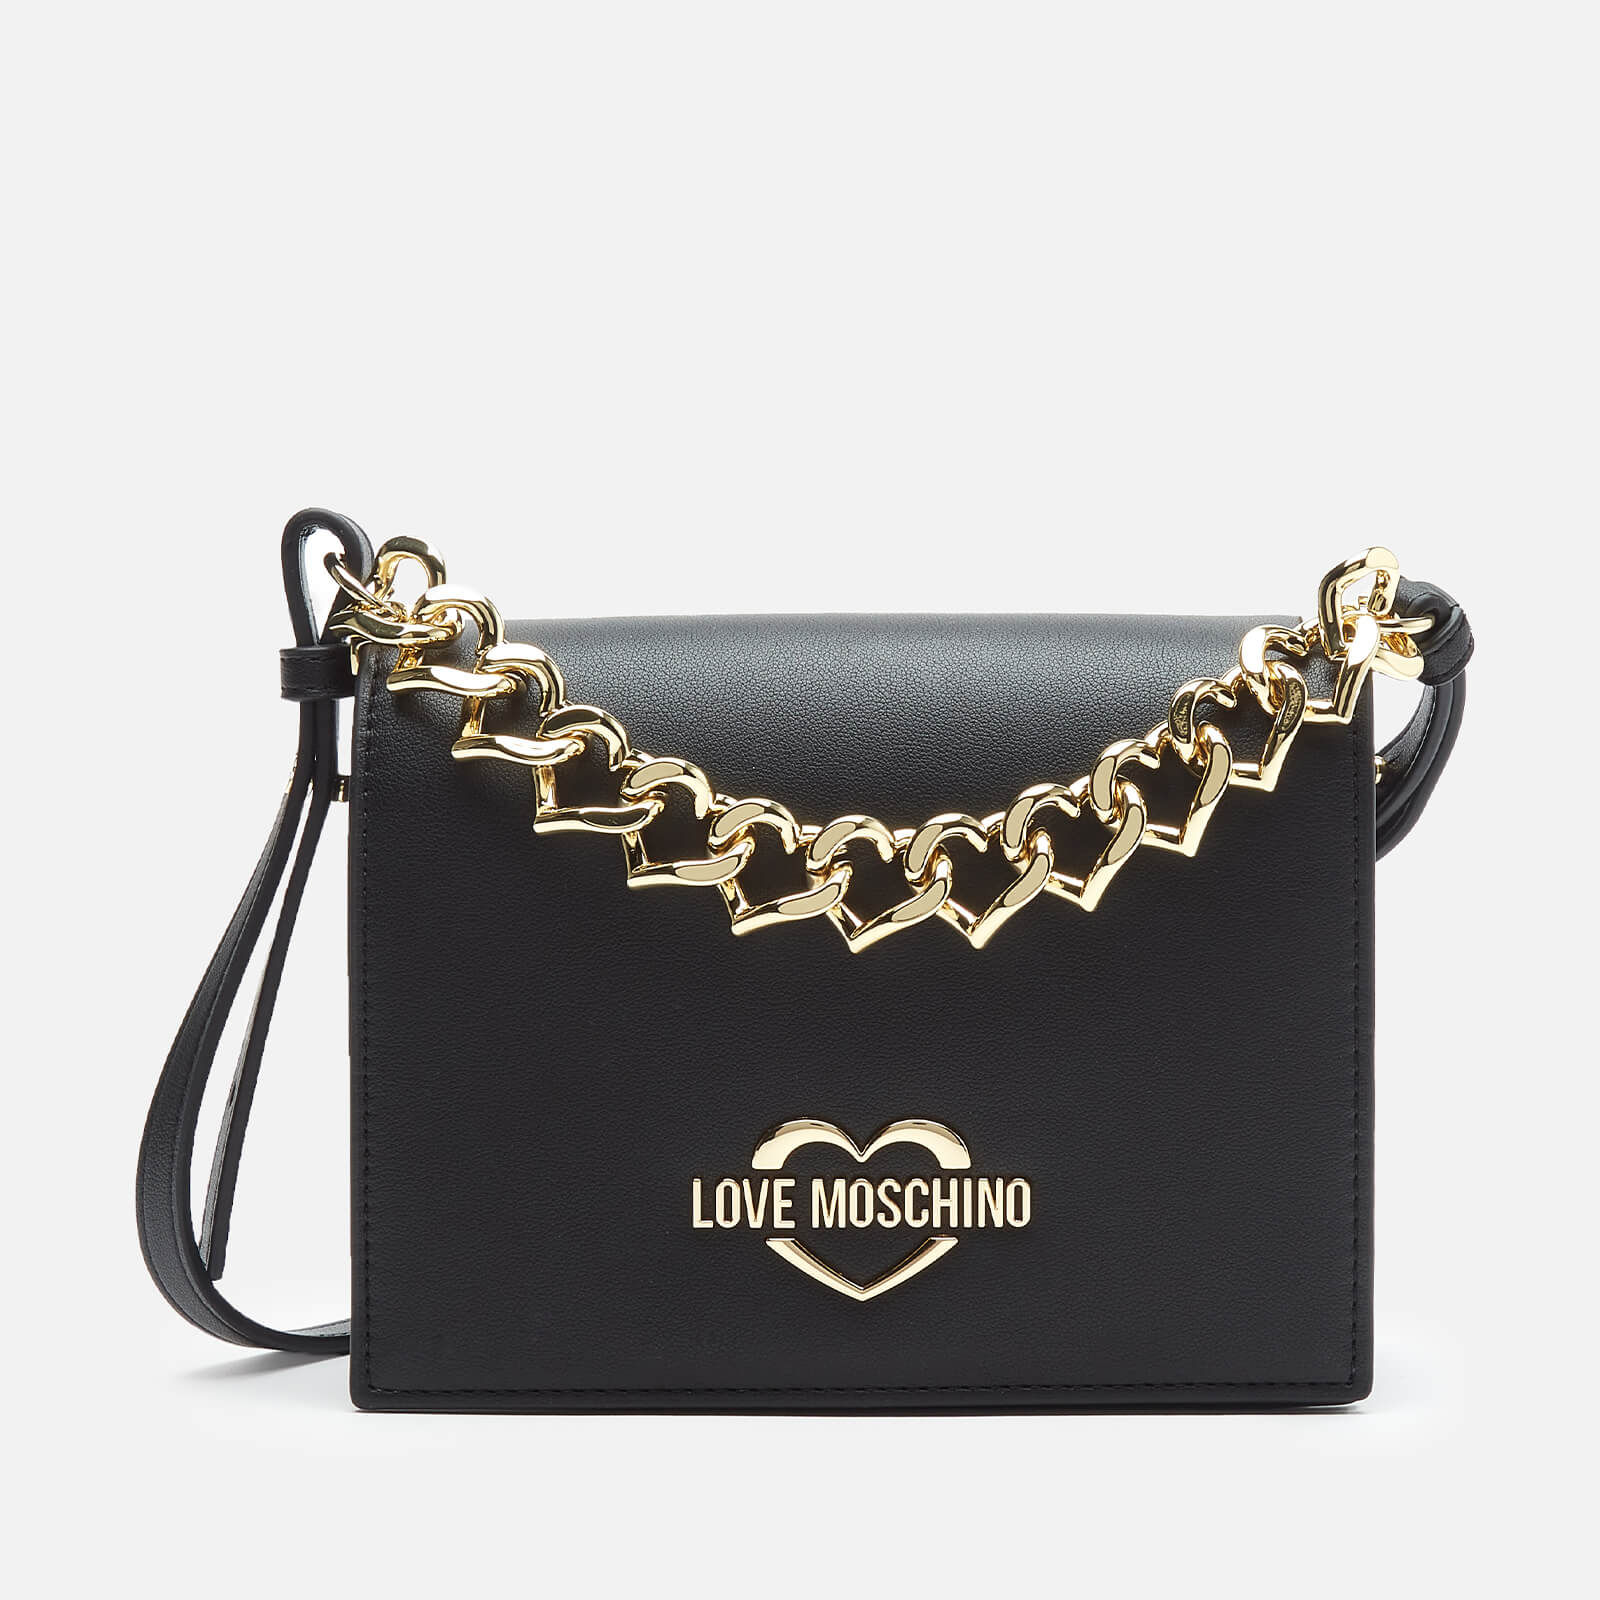 Love Moschino Women's Chain Cross Body Bag - Black